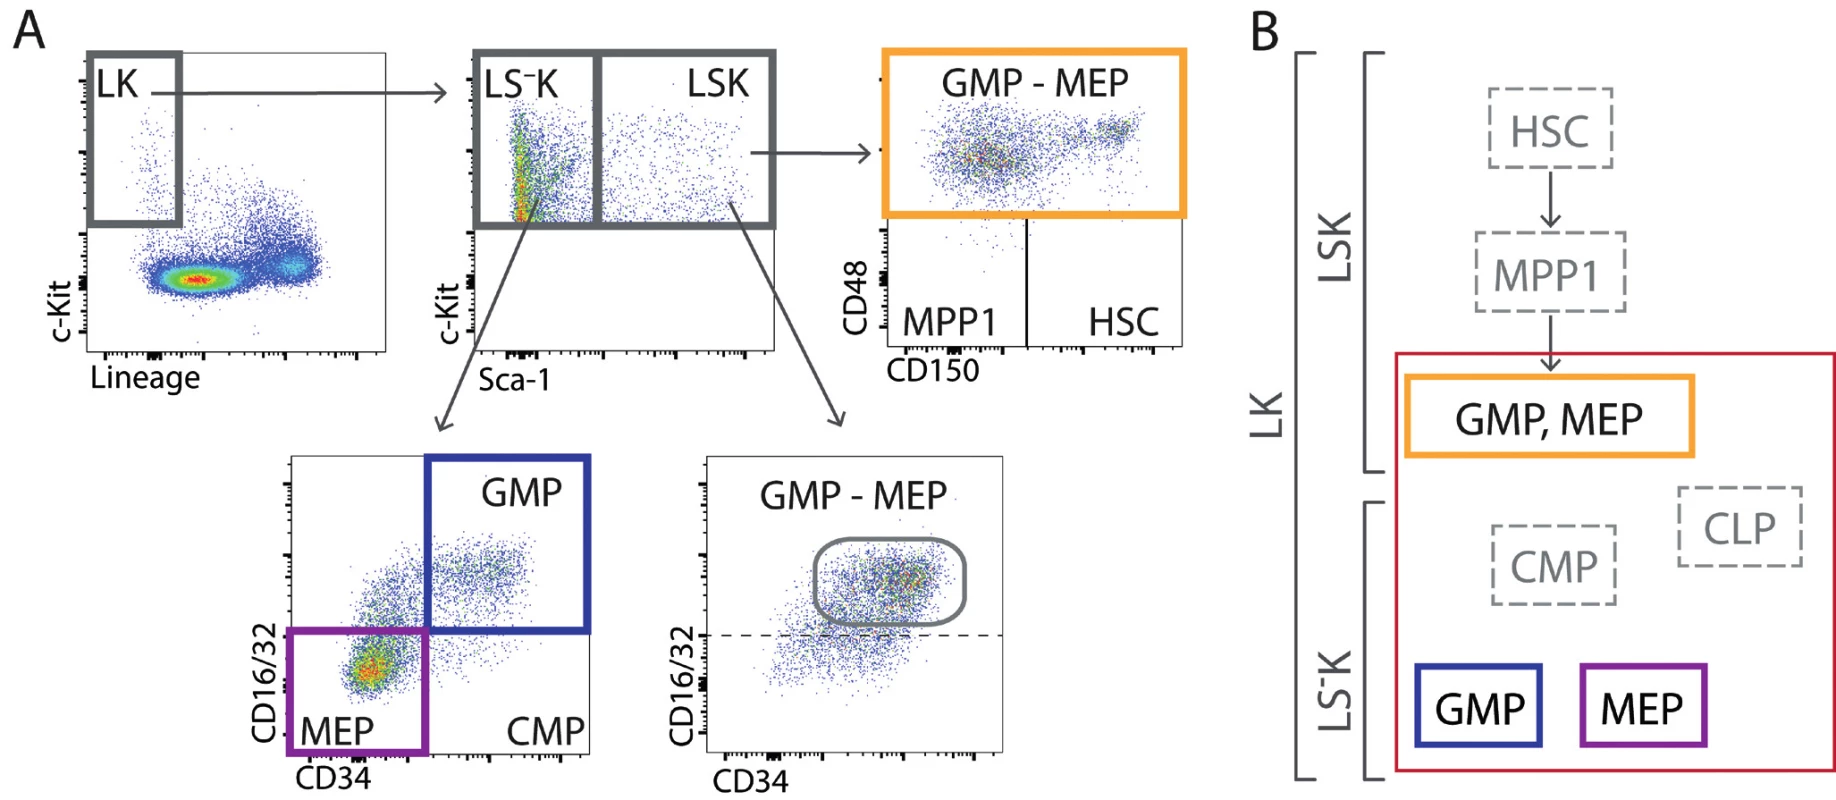  (A) V regenerující kostní dřeni lze také nezralé buňky LK rozdělit pomocí znaku Sca-1 na LSK a LS–
K . V LSK buňkách je velmi málo
buněk s imunofenotypem buněk kmenových, multipotentních progenitorů MPP1 a společných myeloidních progenitorů CMP. Analýza
buněk LSK ukázala, že buňky s fenotypem multipotentních progenitorů (MPP2 a MPP3) jsou ve skutečnosti pozměněnými (expresí
znaku Sca-1) pozdními myeloidními progenitory GMP a MEP. V intenzivně regenerující kostní dřeni je tedy naprostá většina nezralých
buněk (LK) granulocytovými a makrofágovými progenitory a megakaryocytovými-erytroidními progenitory. Praktickému chybění buněk
s imunofenotypem buněk kmenových, multipotentních progenitorů a společných myeloidních progenitorů v intenzivně regenerující kostní
dřeni odpovídá její velmi nízká schopnost transplantace, která je na úrovni 1–2 % [29]. (B) Složení nezralých buněk LSK a LS–
K je v regenerující
kostní dřeni významně pozměněno a naprostá většina těchto buněk jsou erytroidní a granulocytové/makrofágové progenitory